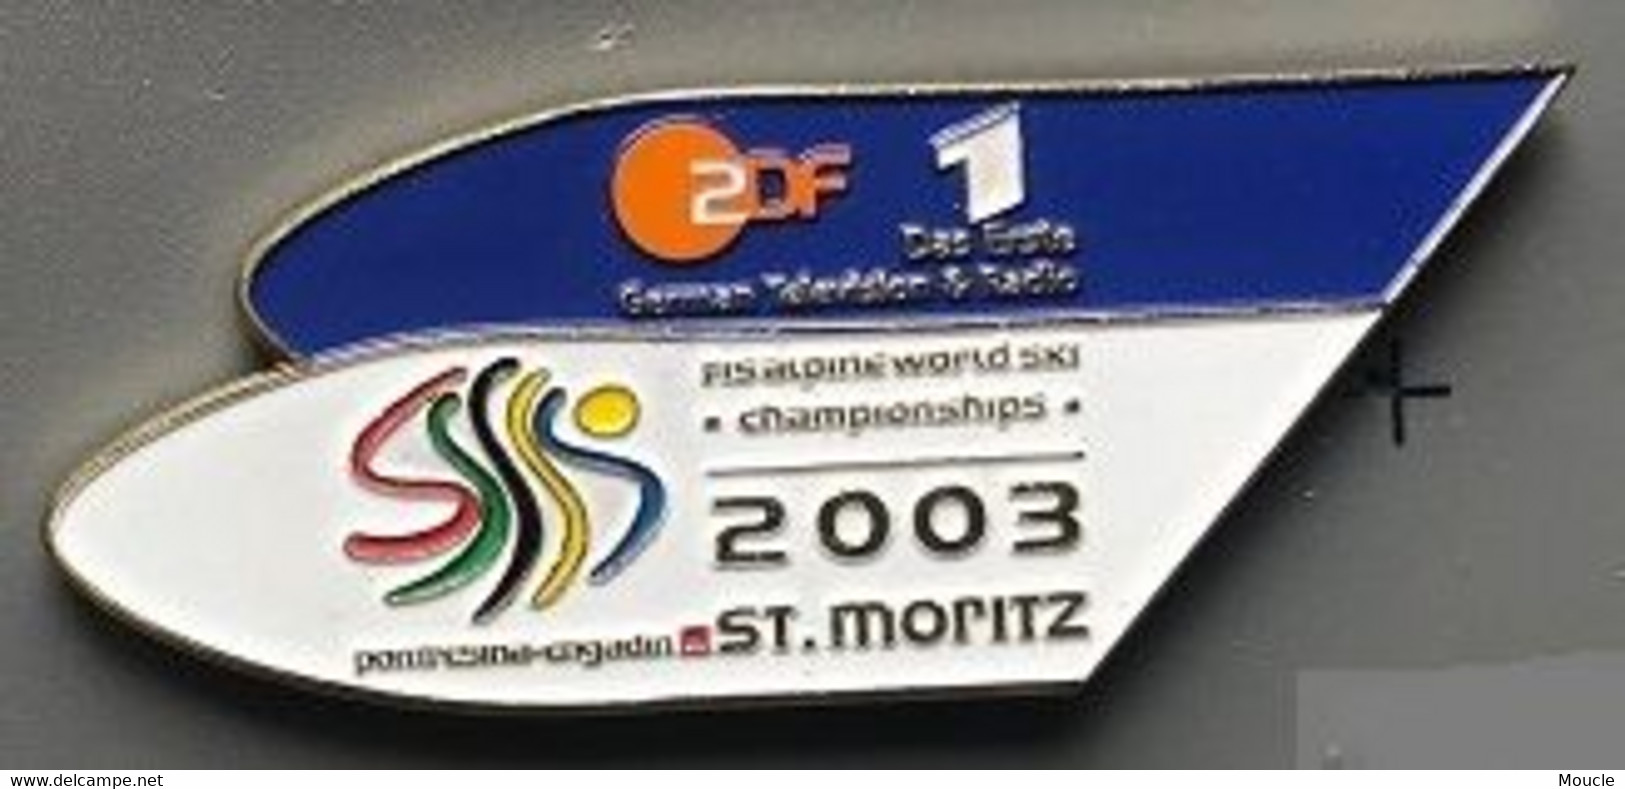 ZDF 1 - DAS ERSTE - GERMAN TELEVISON & RADIO - ALLEMAGNE - FIS ALPINE WORLD SKI - CHAMPIONSHIPS 2003 - ST MORITZ - (31) - Medien